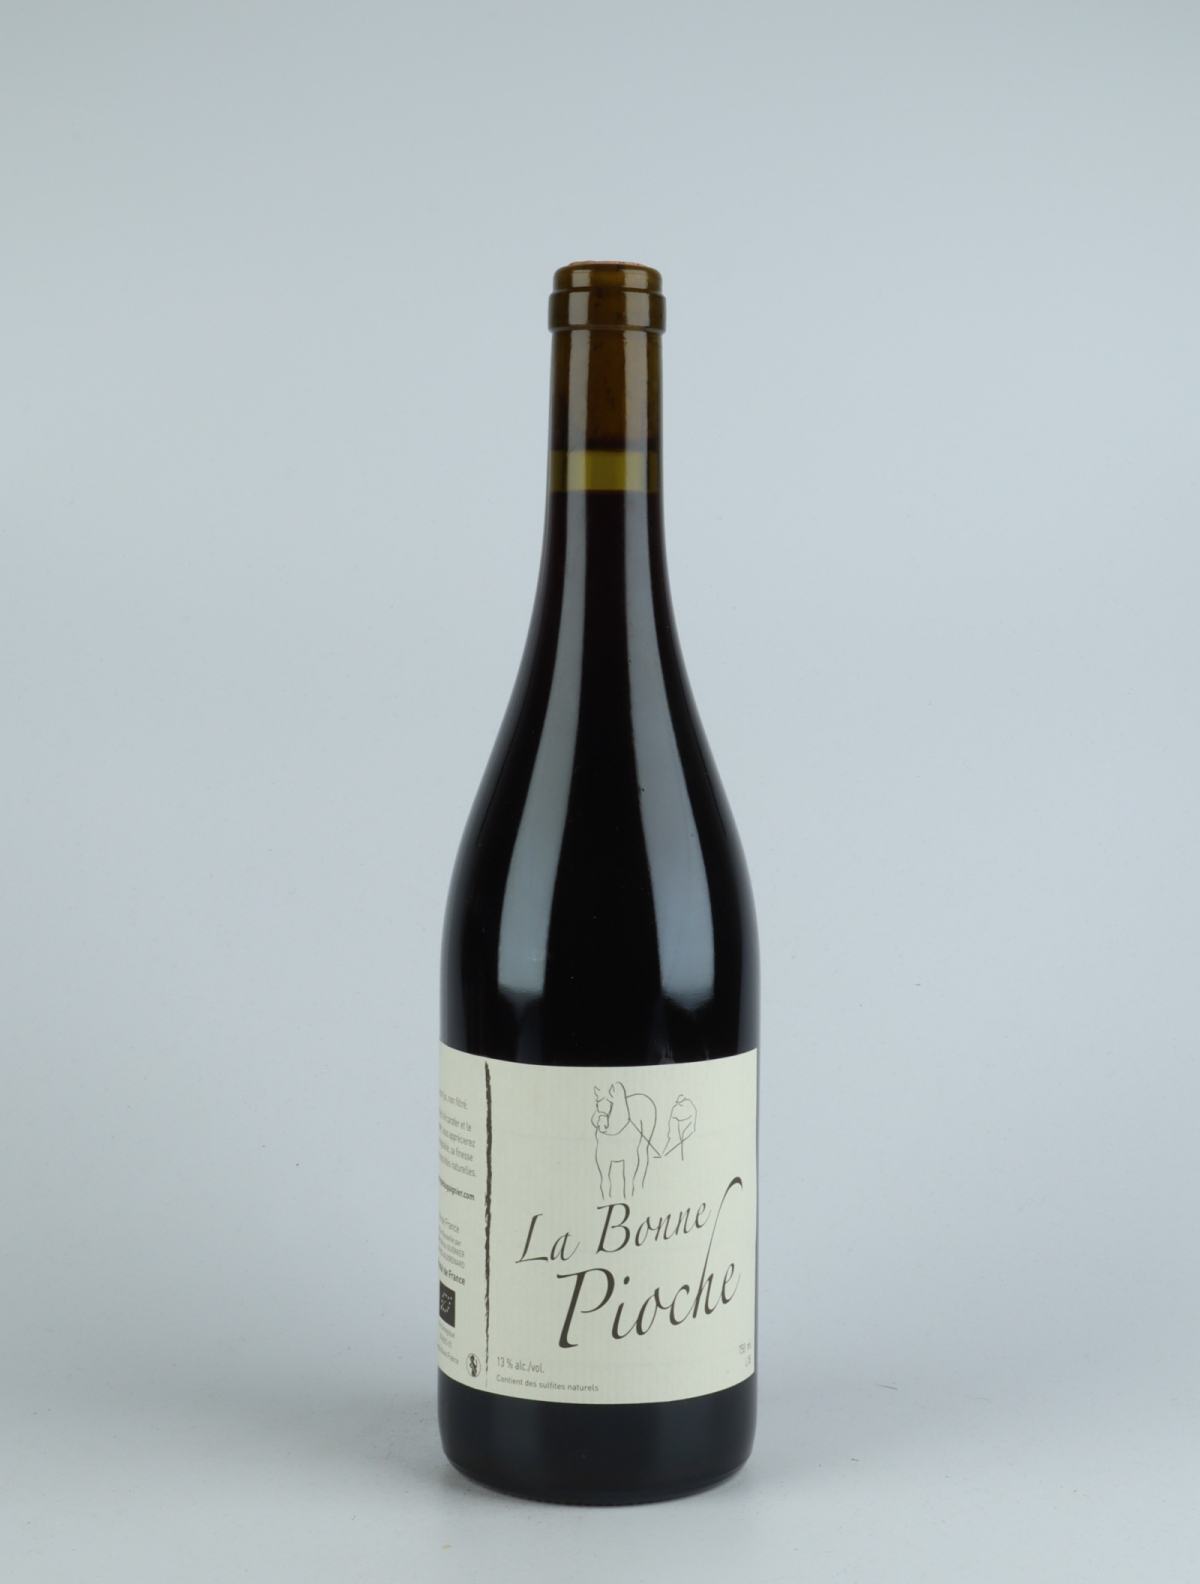 A bottle  La Bonne Pioche Red wine from Michel Guignier, Beaujolais in France